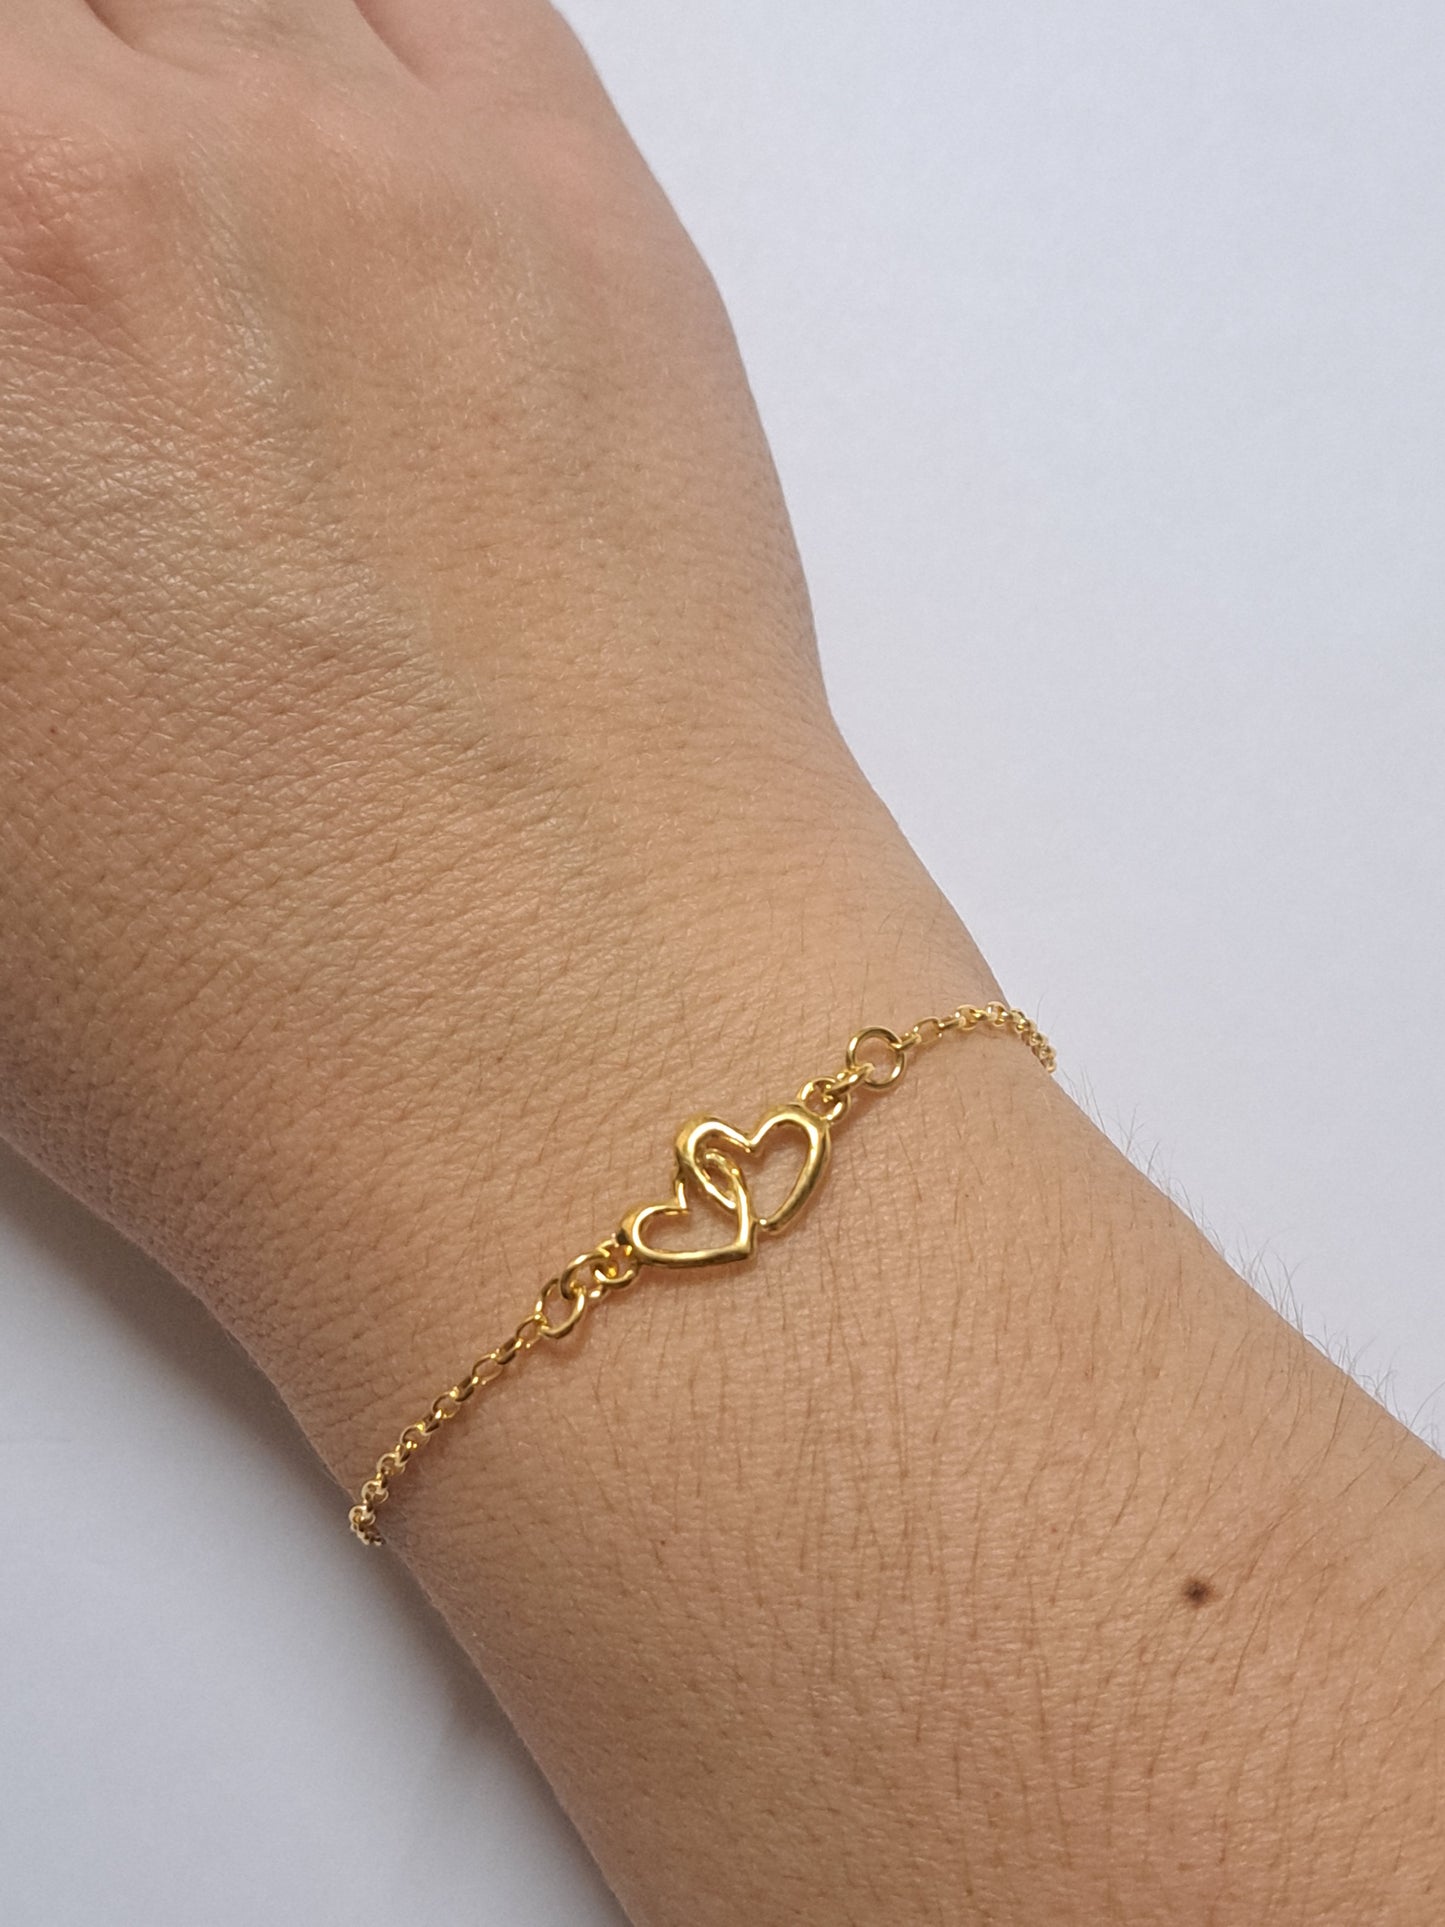 Bracelet double coeurs en argent doré à l'or 24k. Site de bijoux. France